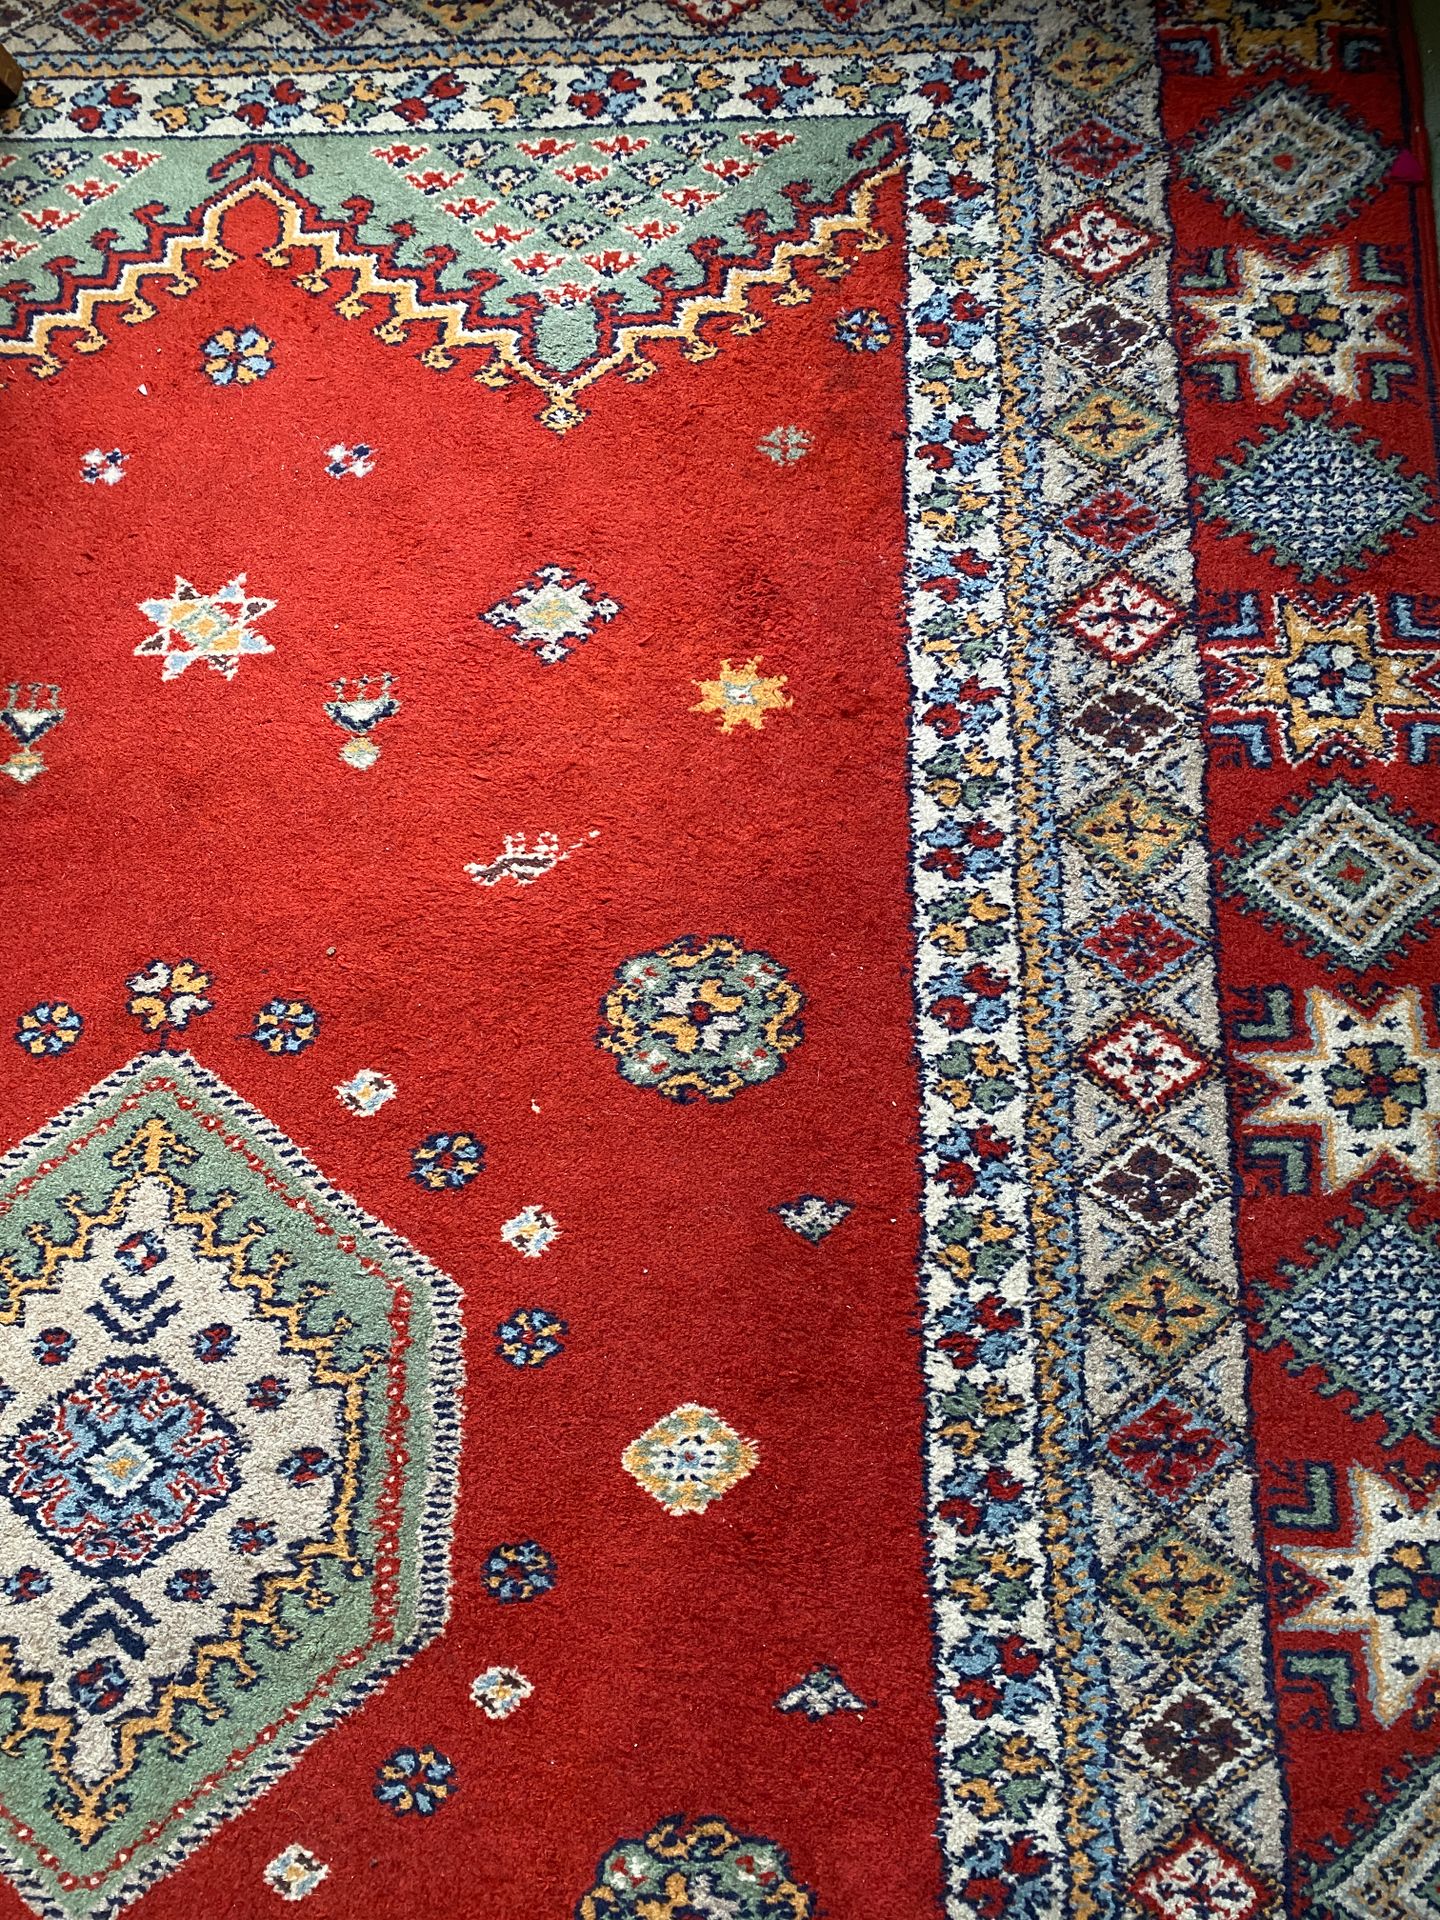 Null 红色背景的地毯

(2022年1月20日出售)